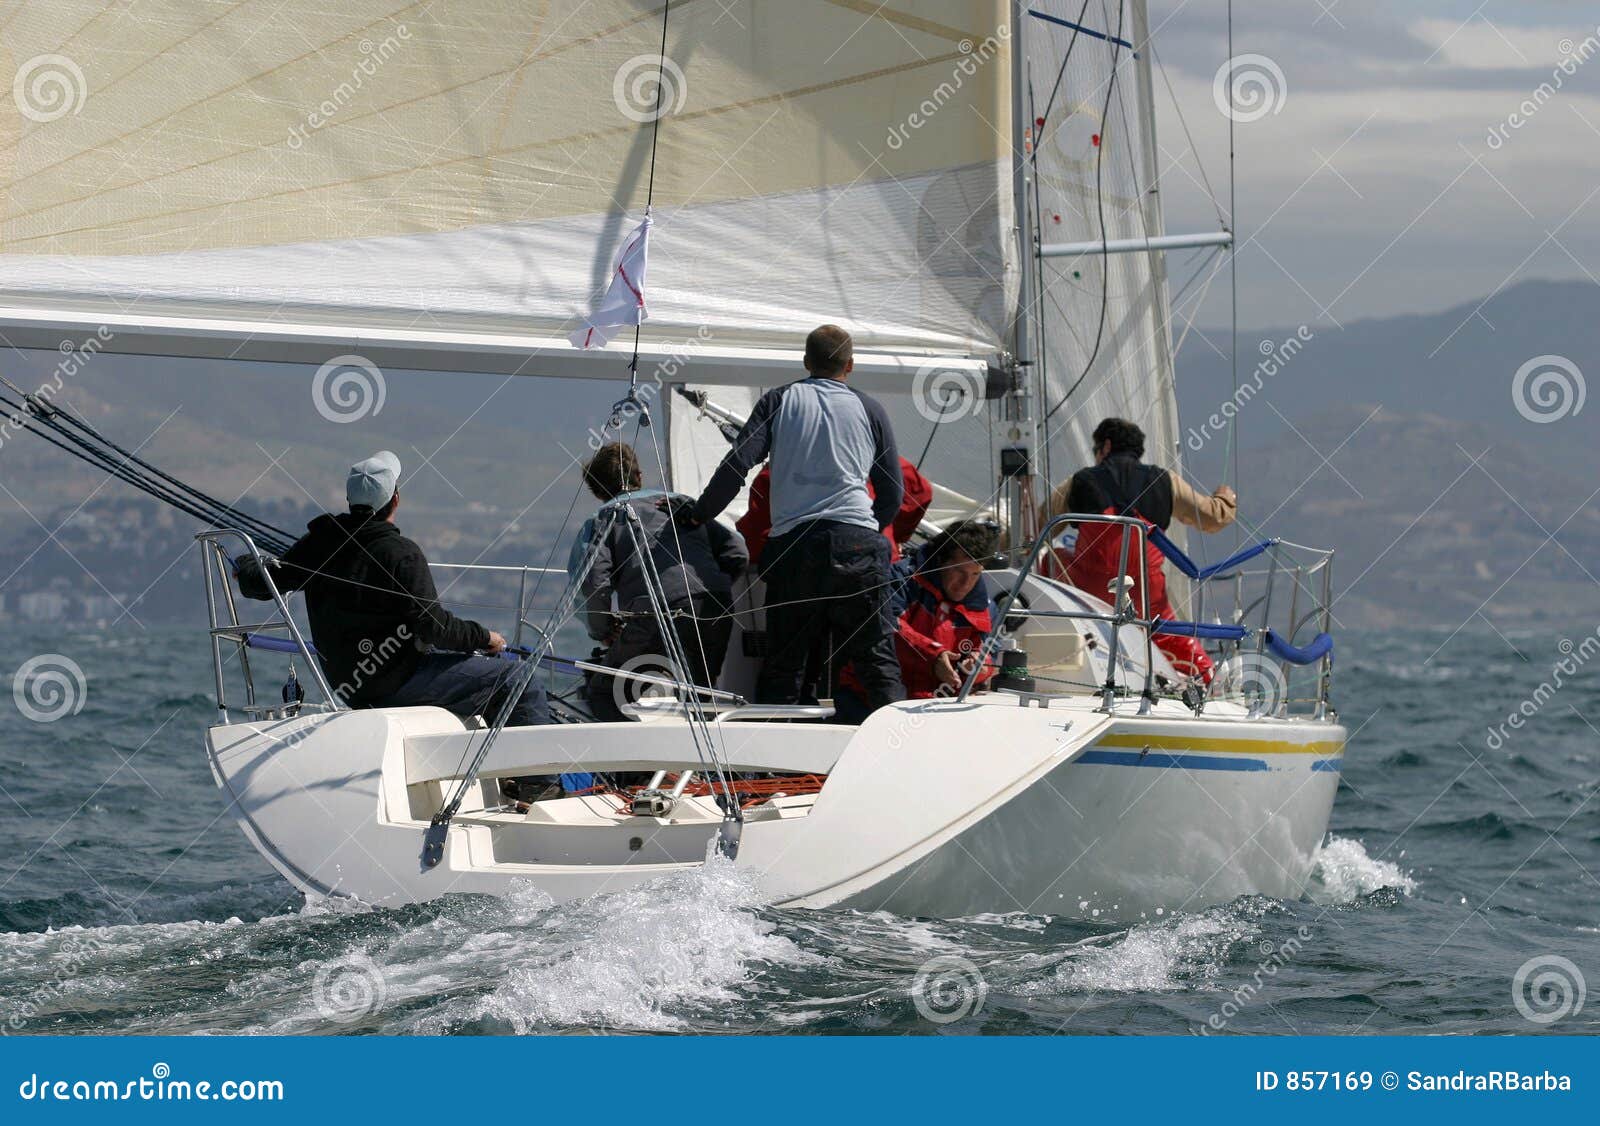 sailing, yachting #6